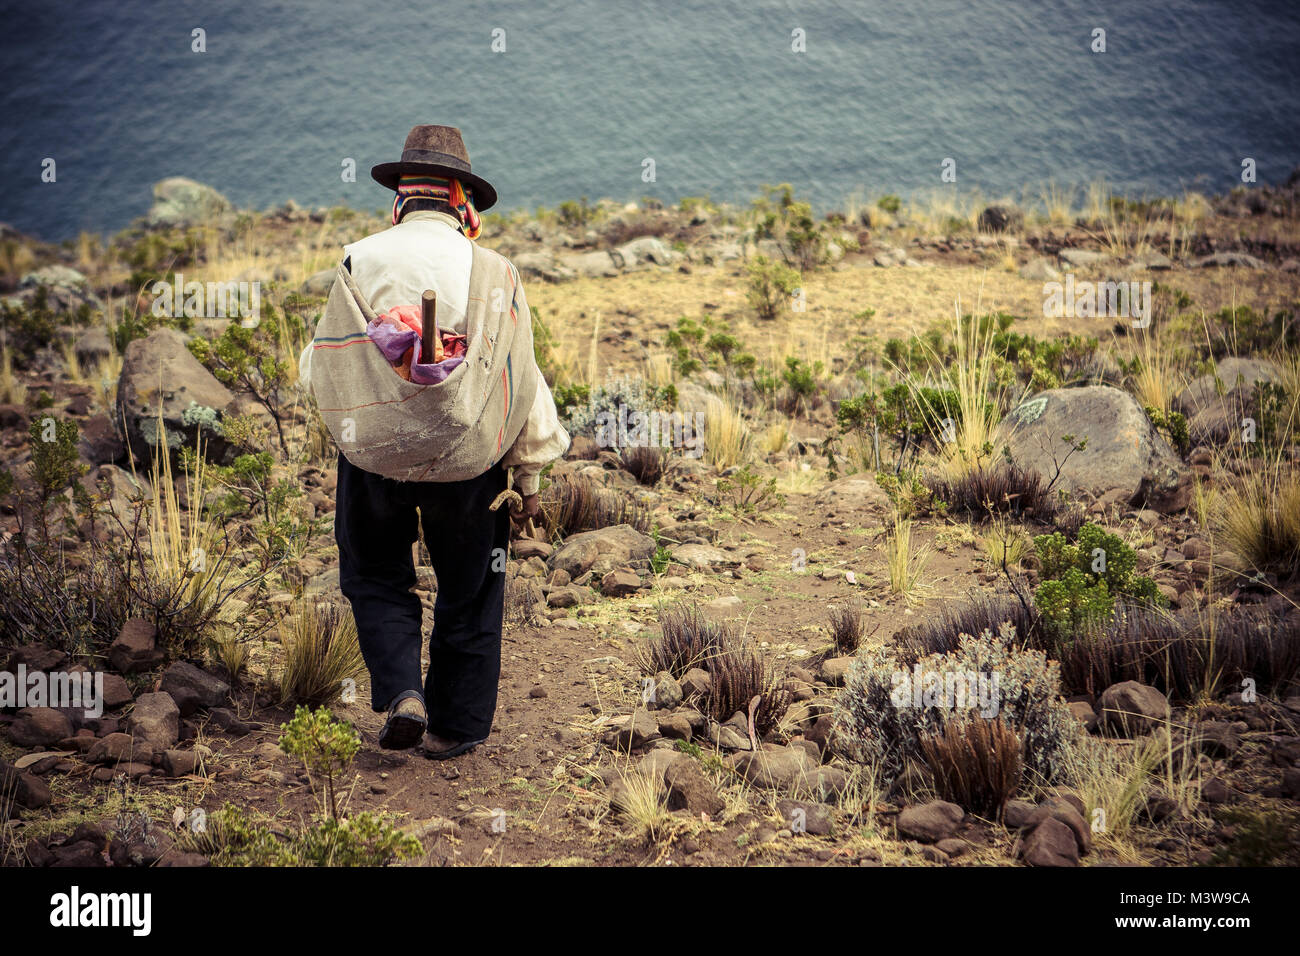 Pauvre homme vu de dos marchant sur une falaise, l'île de Taquile, lac Titicaca, Pérou Banque D'Images